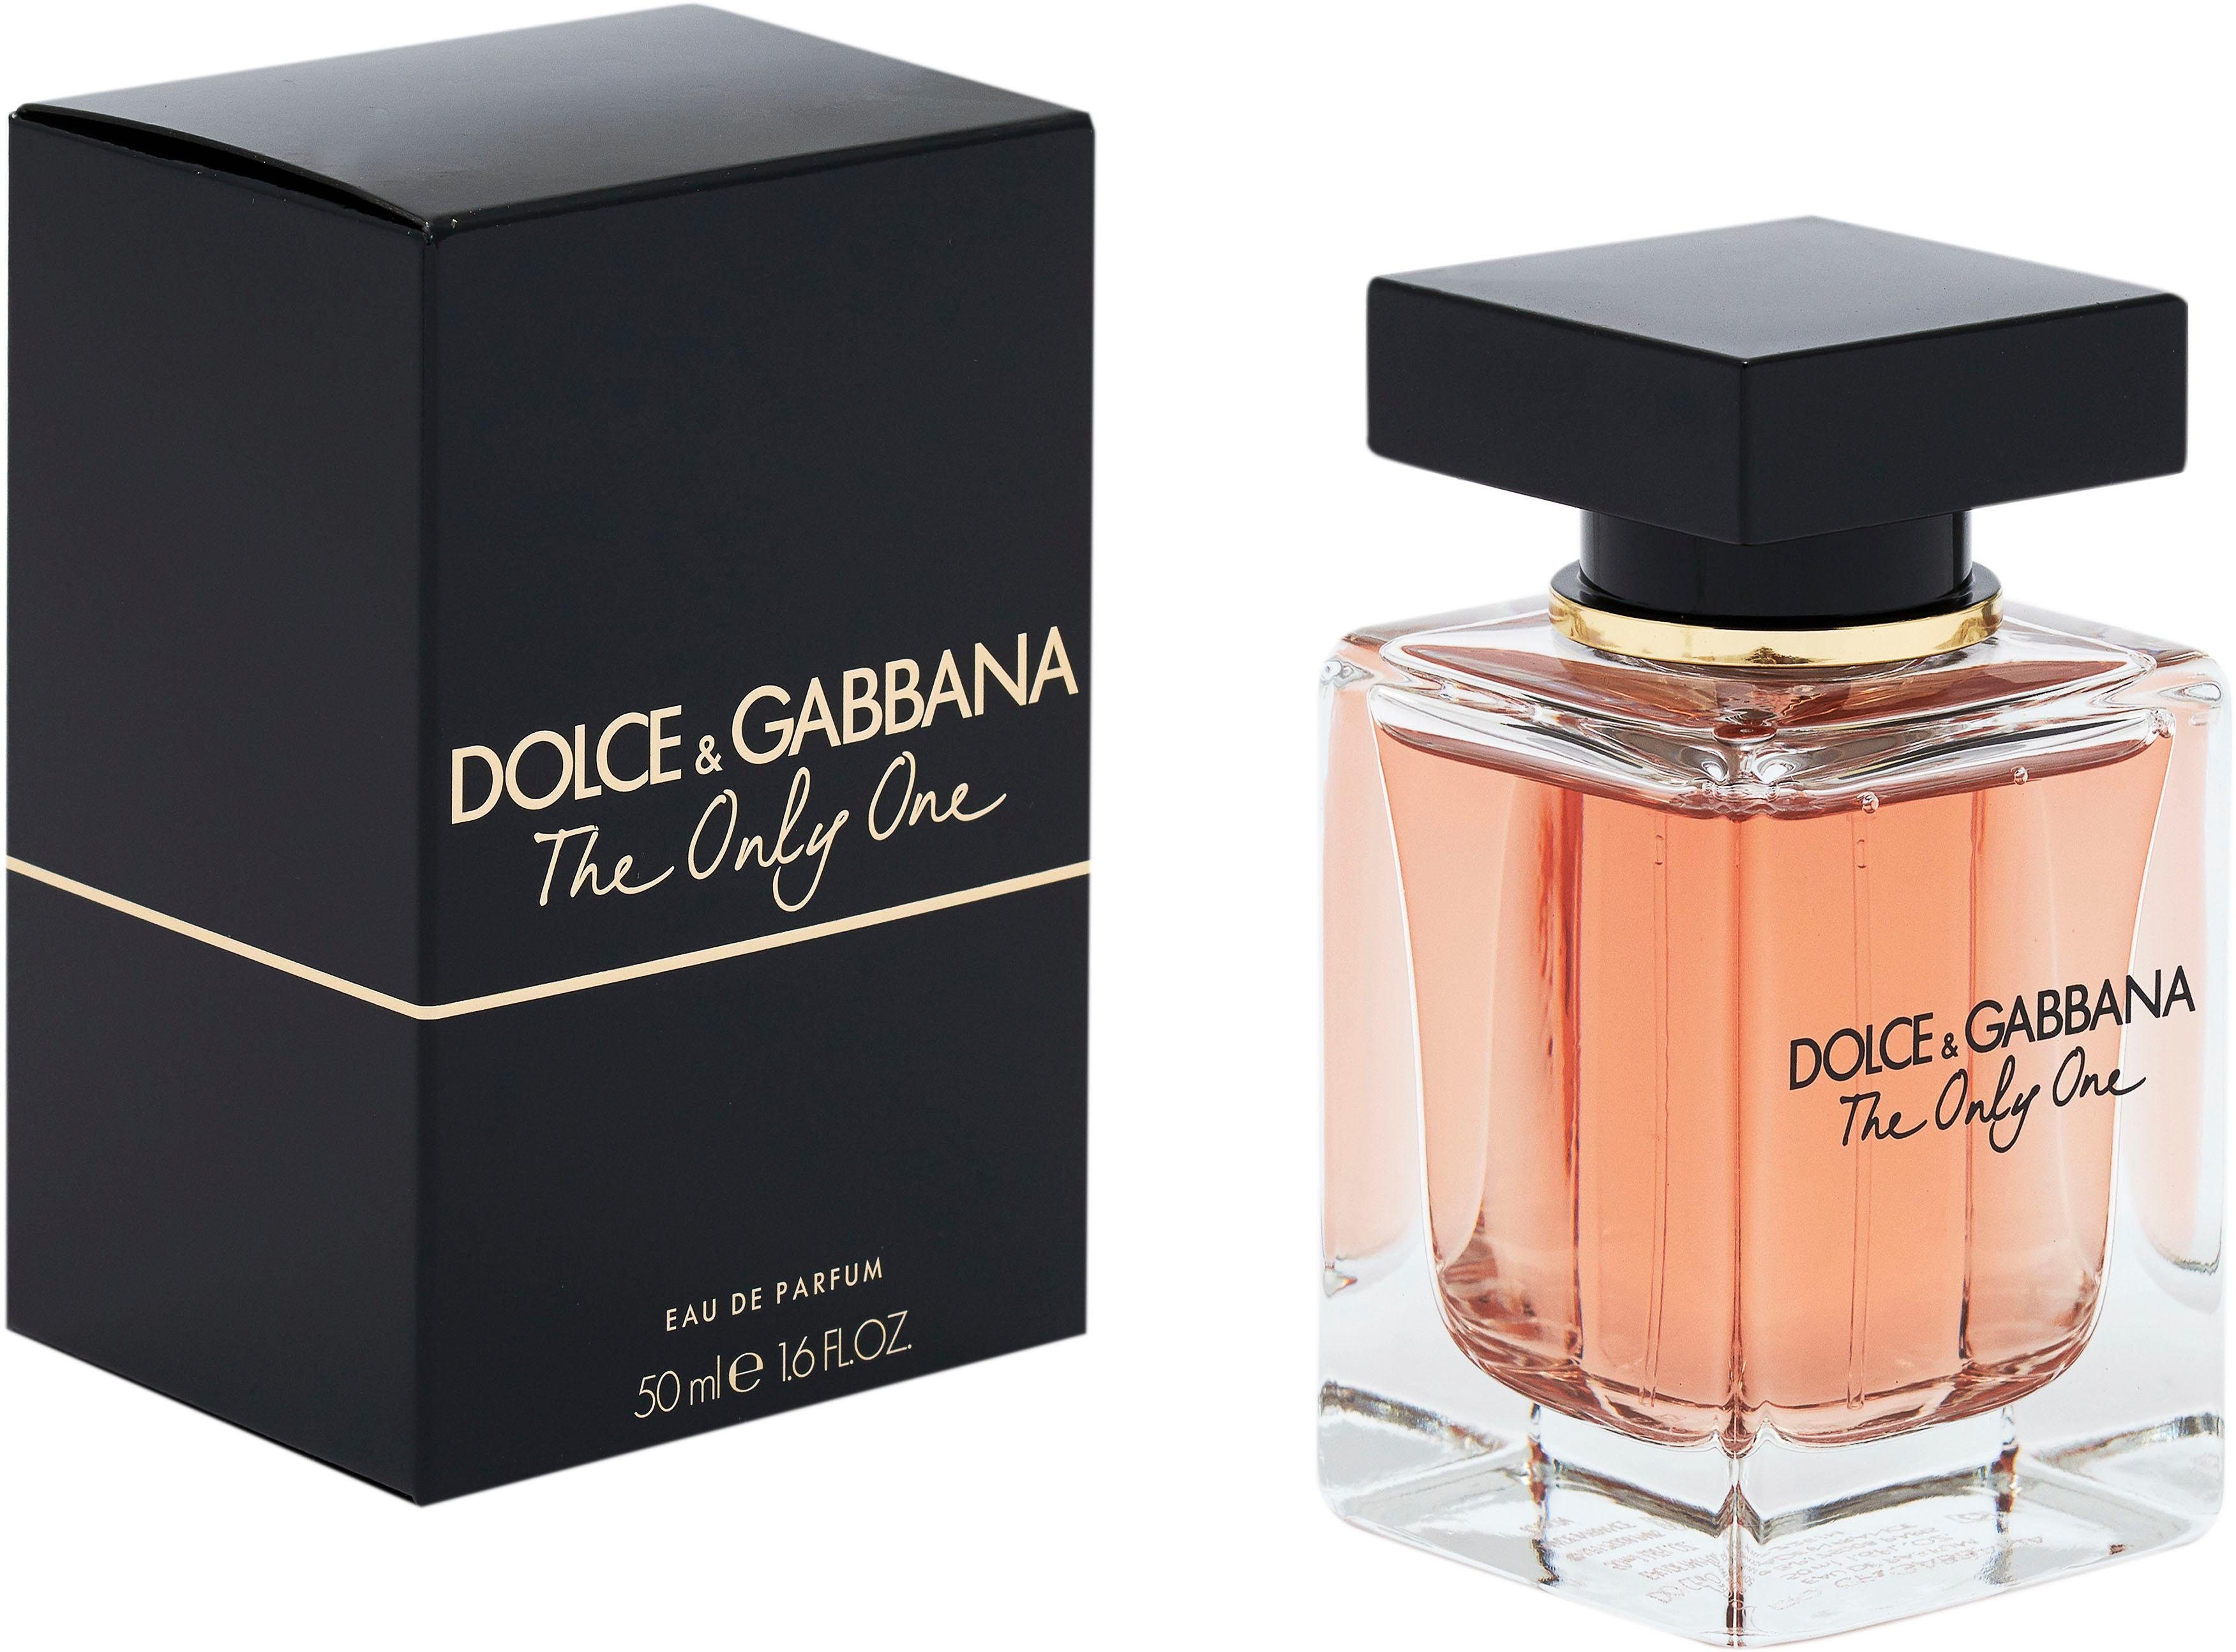 DOLCE & GABBANA de One Eau Only The Parfum